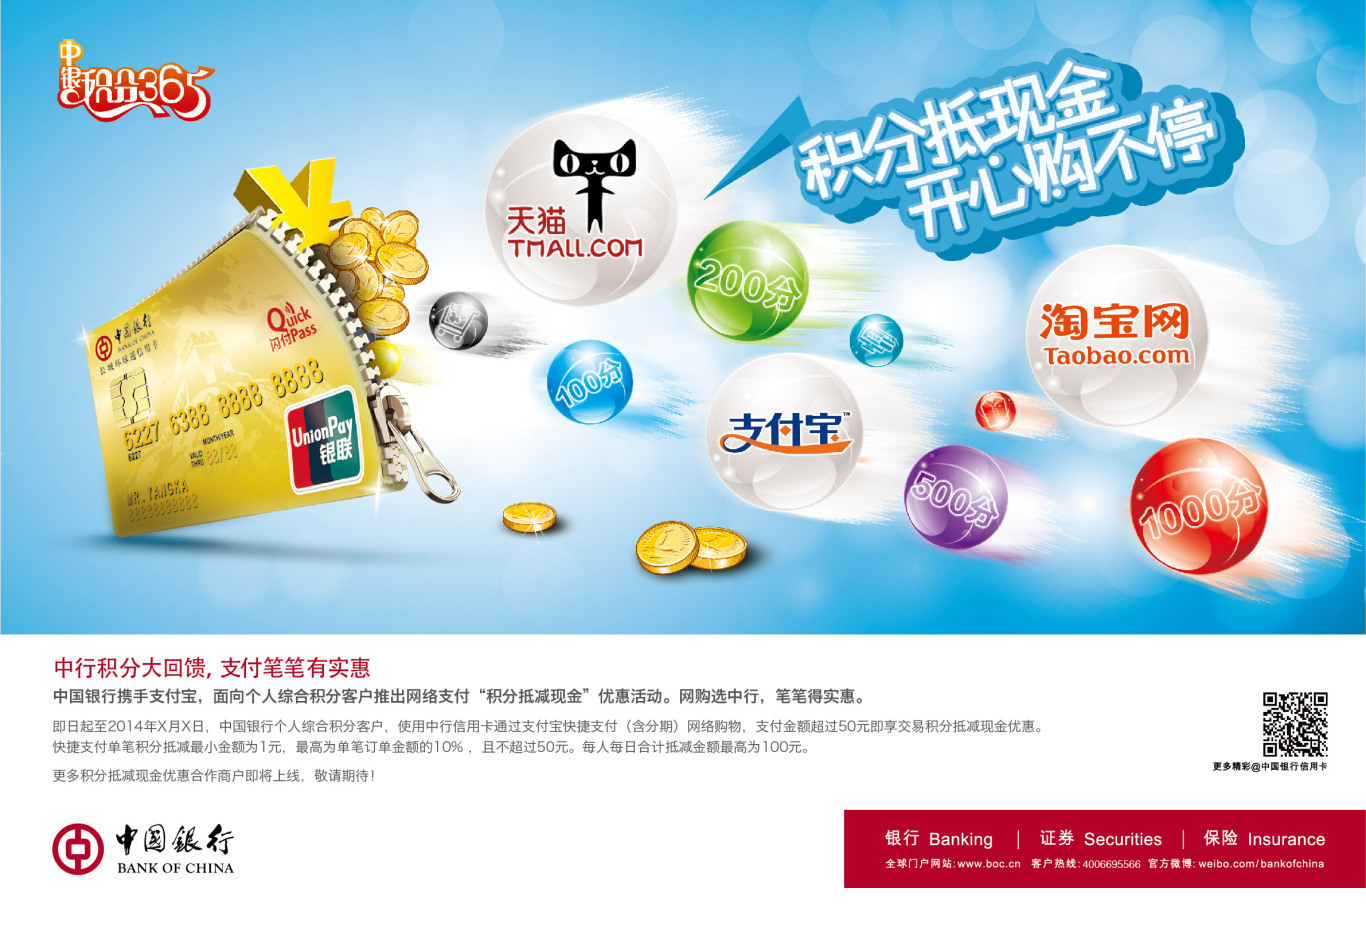 中国银行个人业务海报设计（包括信用卡分期、跨境消费、个人金融等等）图3